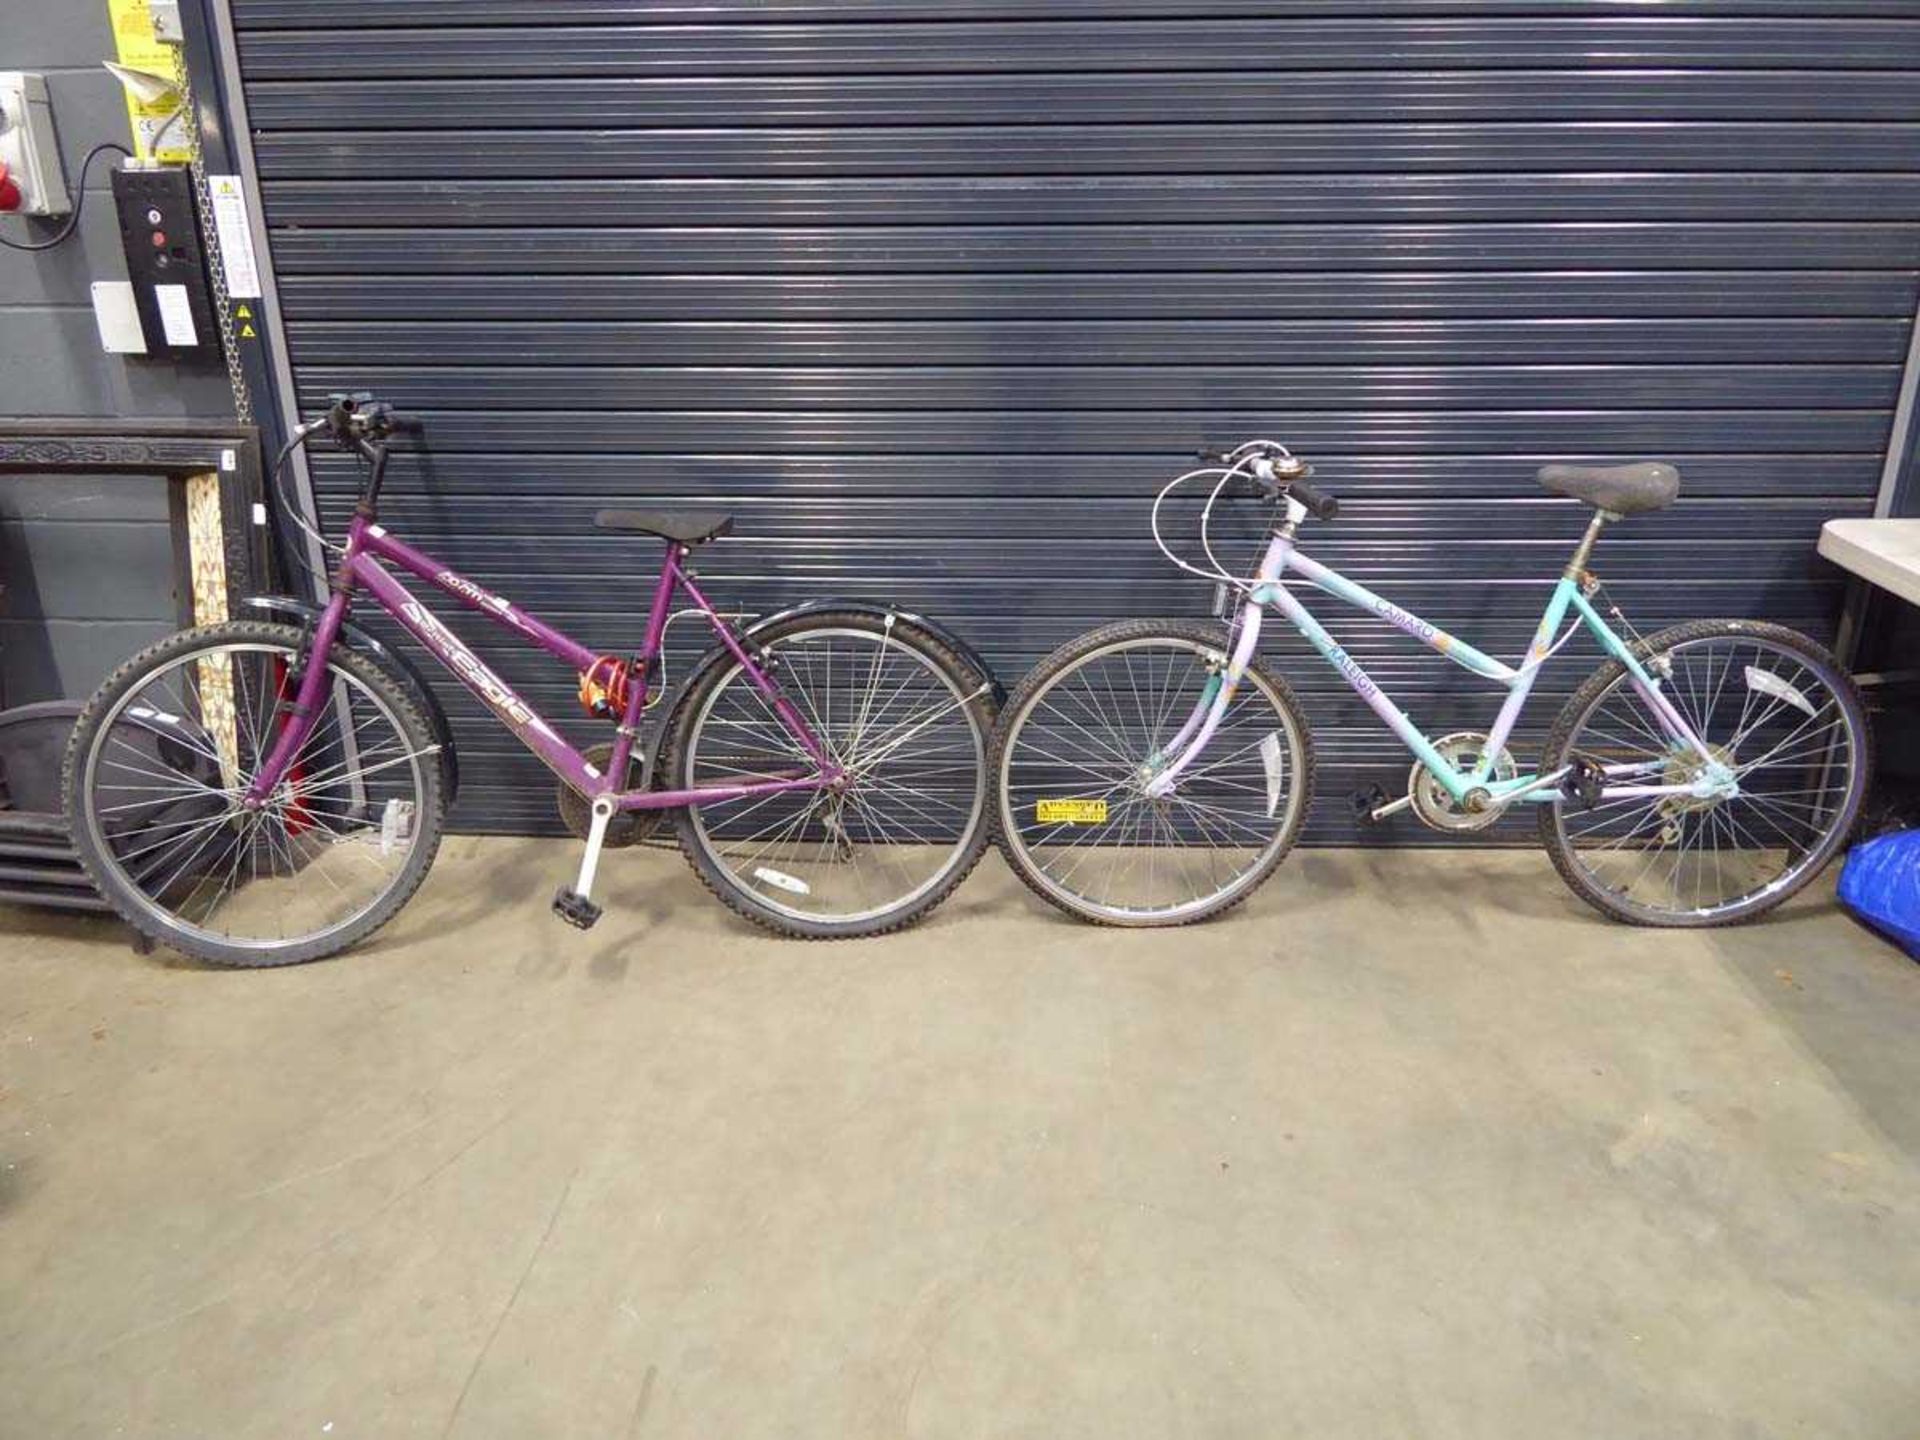 British Eagle purple ladies bike and Raleigh multi-coloured bike